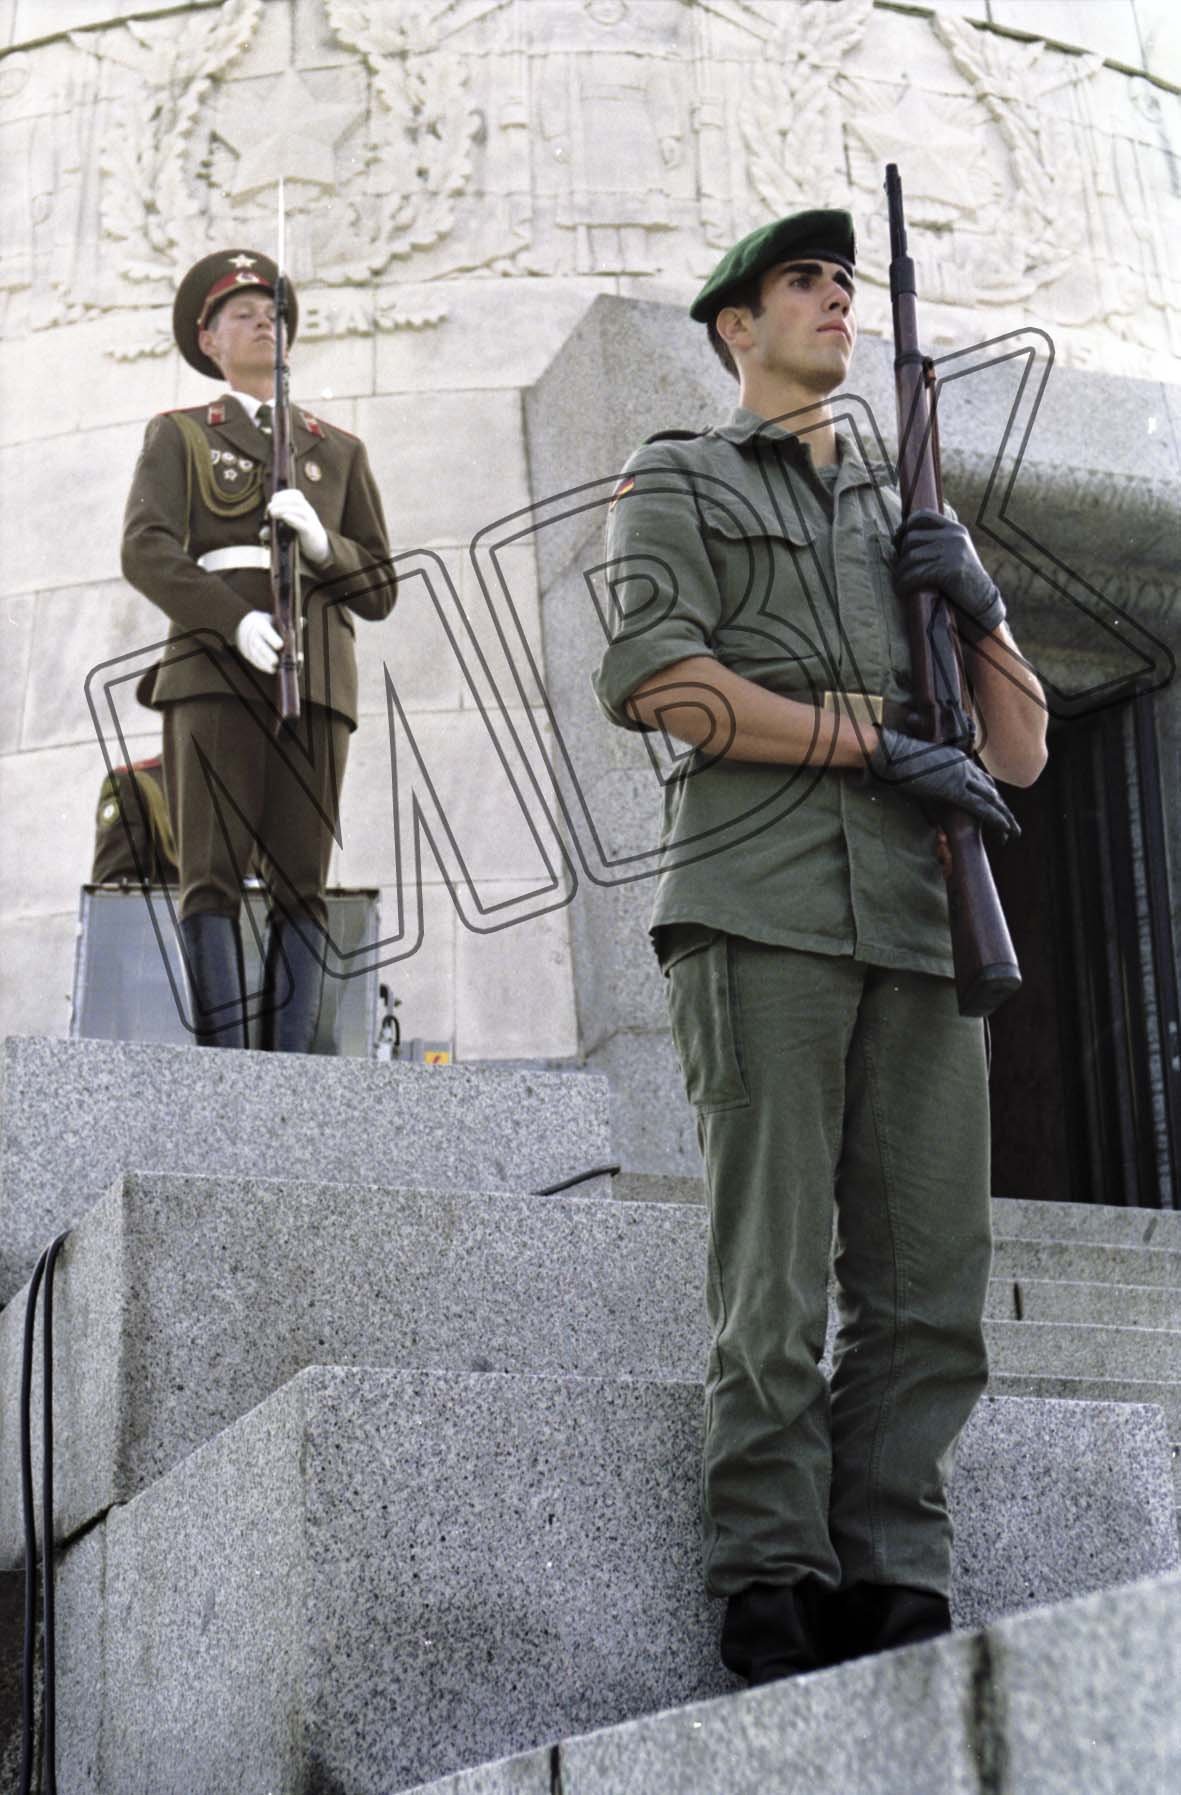 Fotografie: Generalprobe zur Verabschiedung der WGT im Treptower Park, Berlin, 30. August 1994 (Museum Berlin-Karlshorst RR-P)